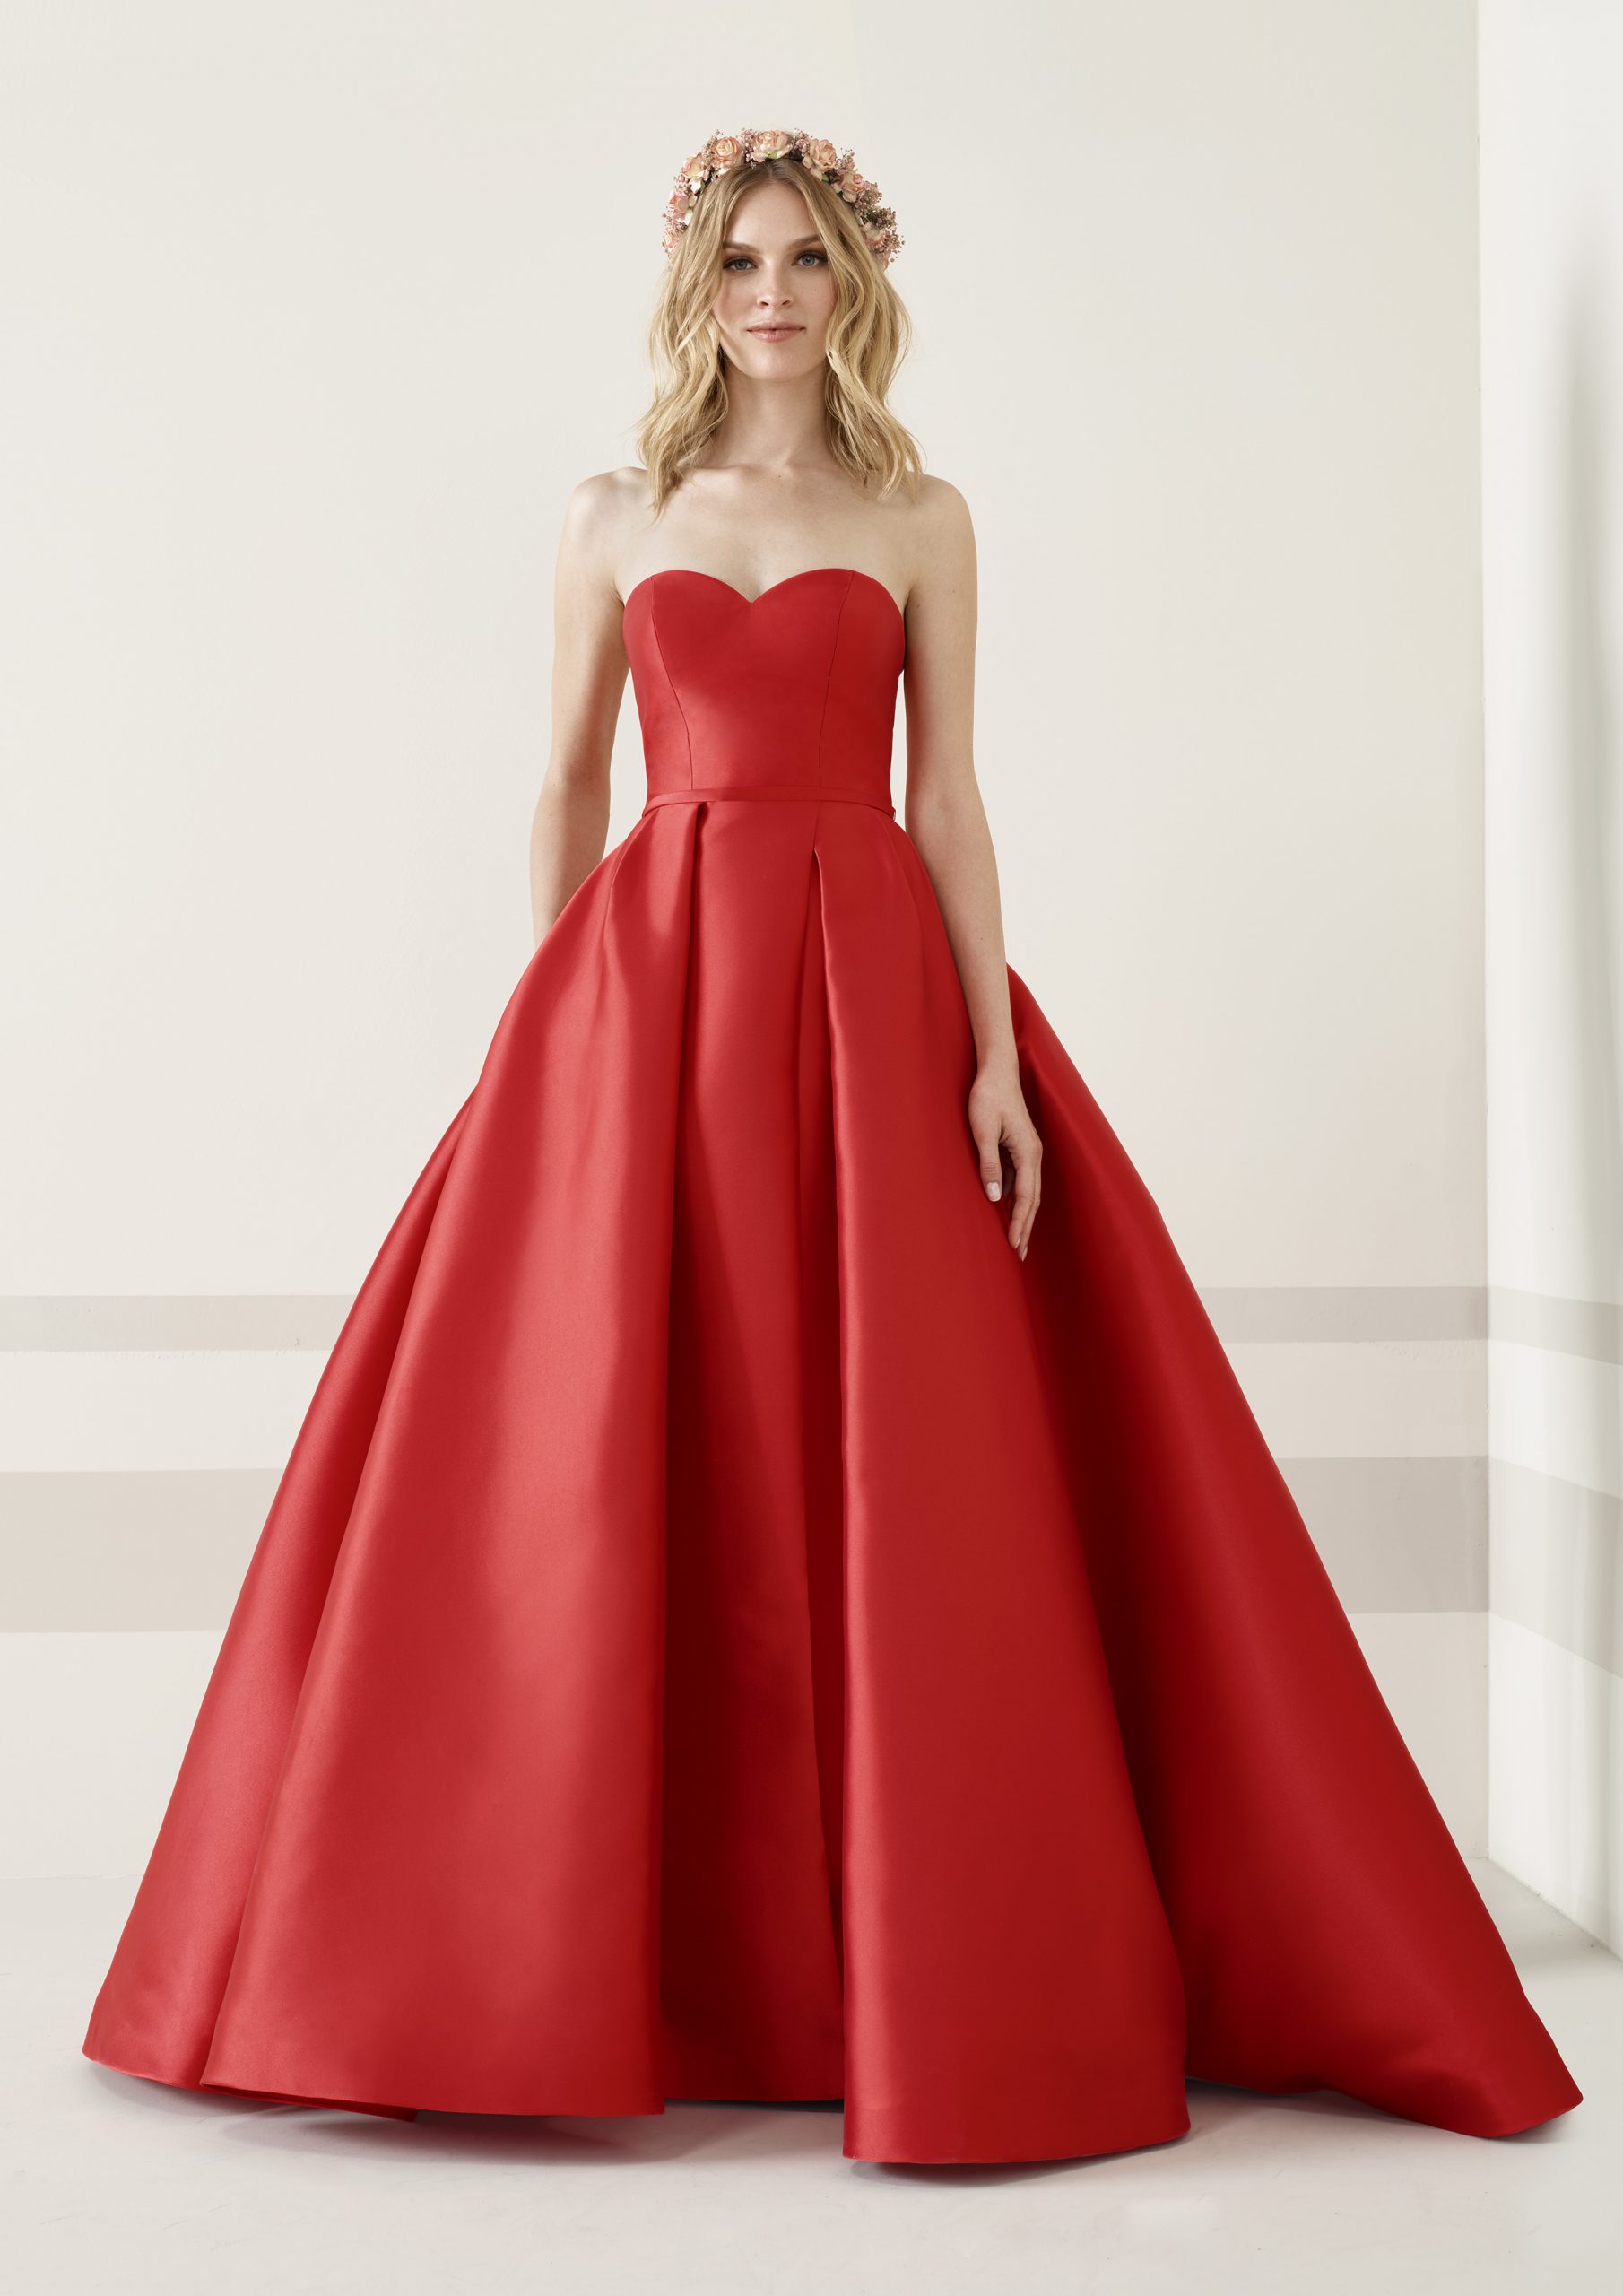 4 tendencias en vestidos de ser la invitada perfecta, colección Pronovias 2019 - Modalia.es